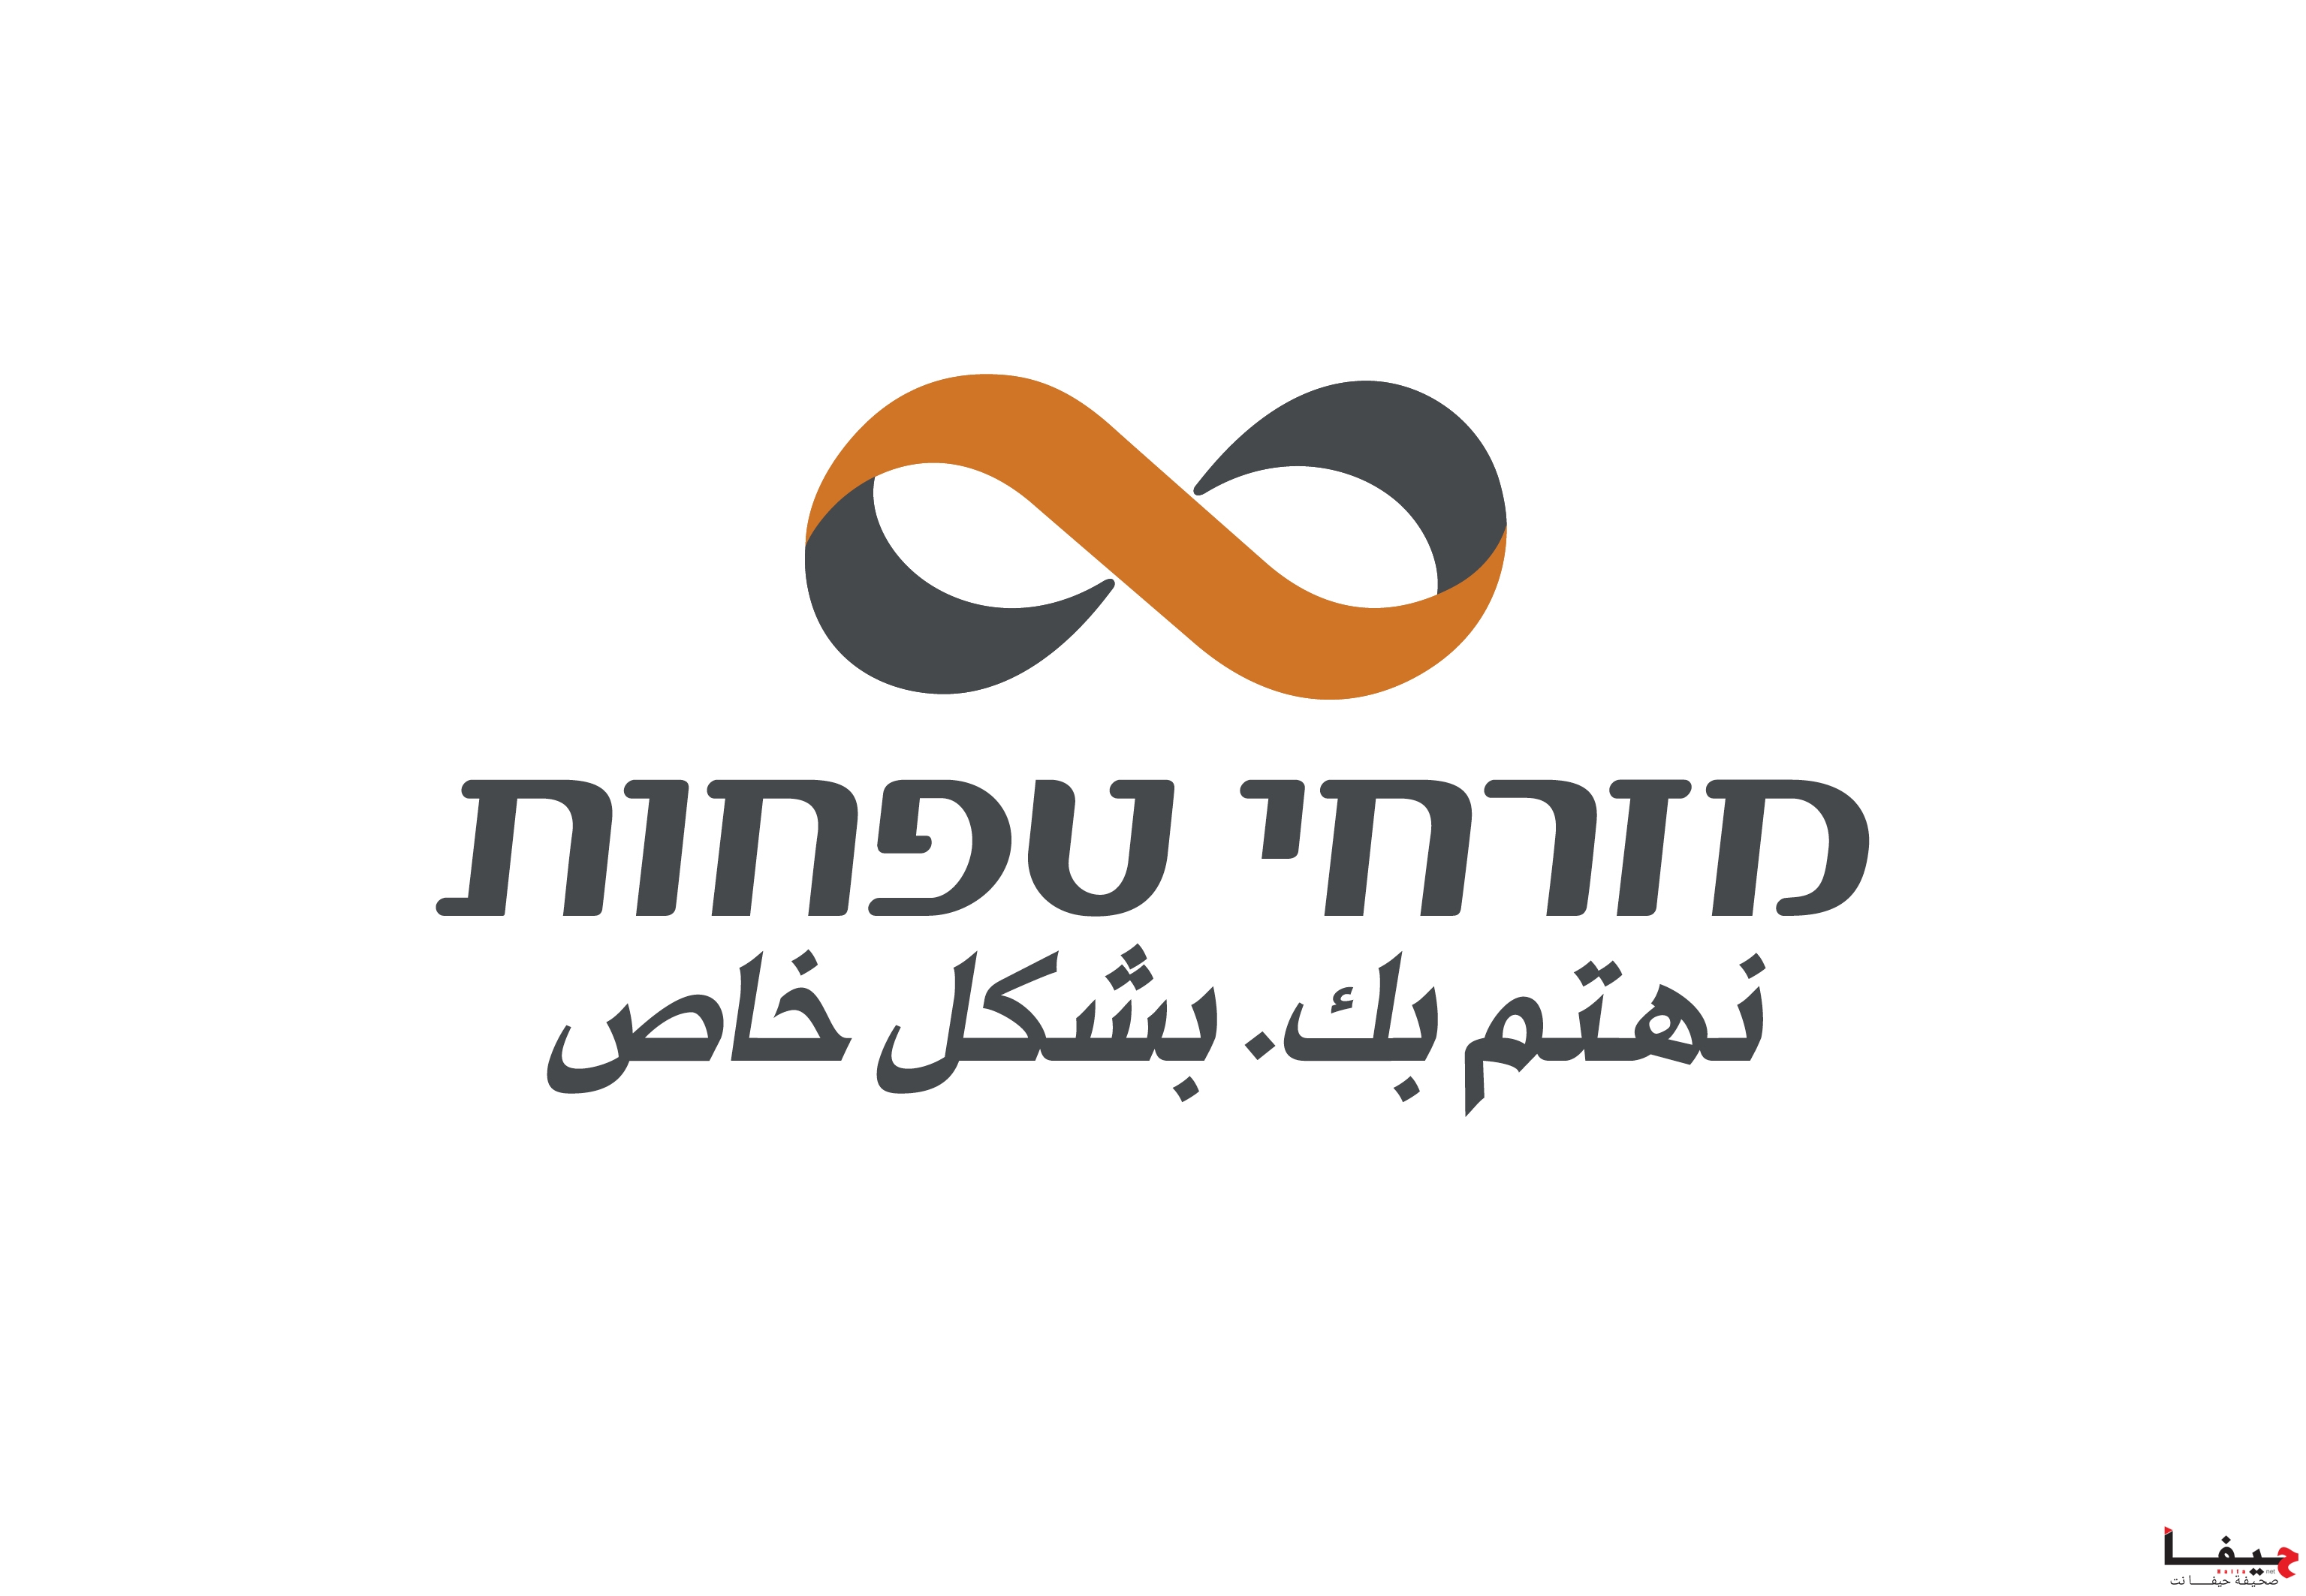 MZR_logo (8)